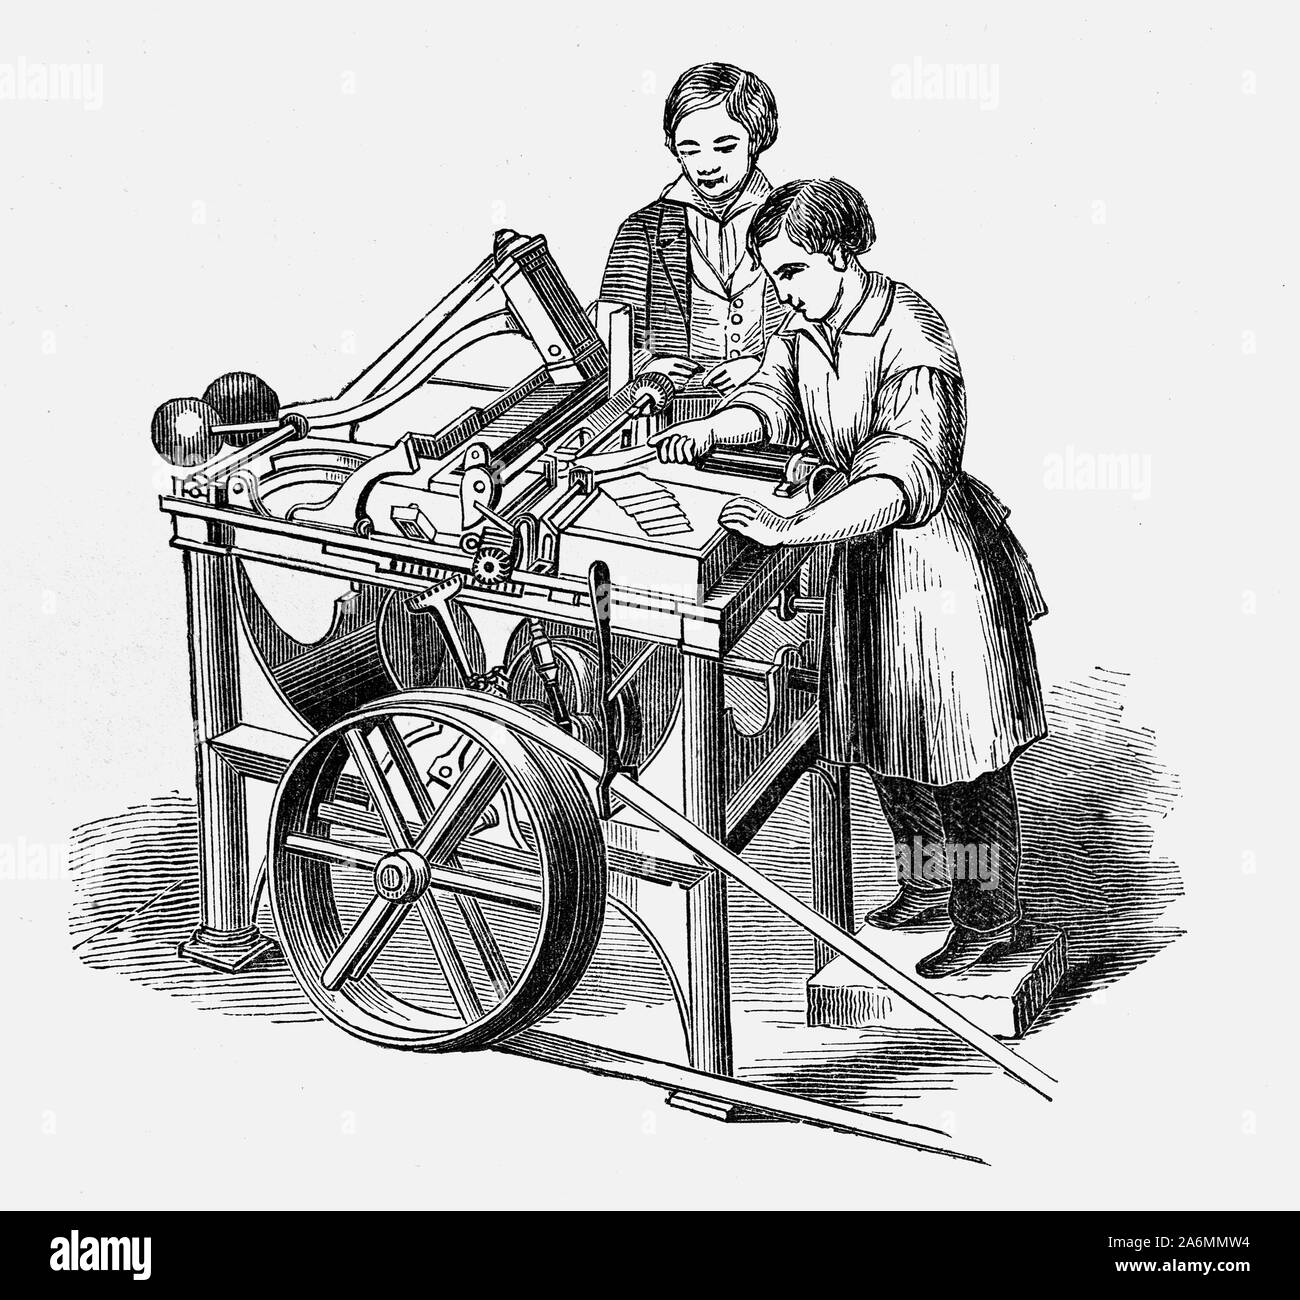 Prima di 1845, fatti a mano buste erano tutti quelli che erano disponibili per uso commerciale e domestico. Nel 1845, Edwin Hill e Warren De La Rue hanno concesso un brevetto britannico per la prima busta-making machine. Essi erano piatti diamante, losanga (o rombo)-fogli sagomati o "vuoti" che erano stati pretaglio a forma prima di essere alimentati alla macchina per le operazioni di piegatura e pronta per la piegatura per formare un involucro di forma rettangolare. I bordi dei lembi sovrapposti trattata con una pasta o adesivo e il metodo di fissaggio della busta o involucro è stata una scelta dell'utente. Il parzializzatore simmetrica disposizione significava che Foto Stock